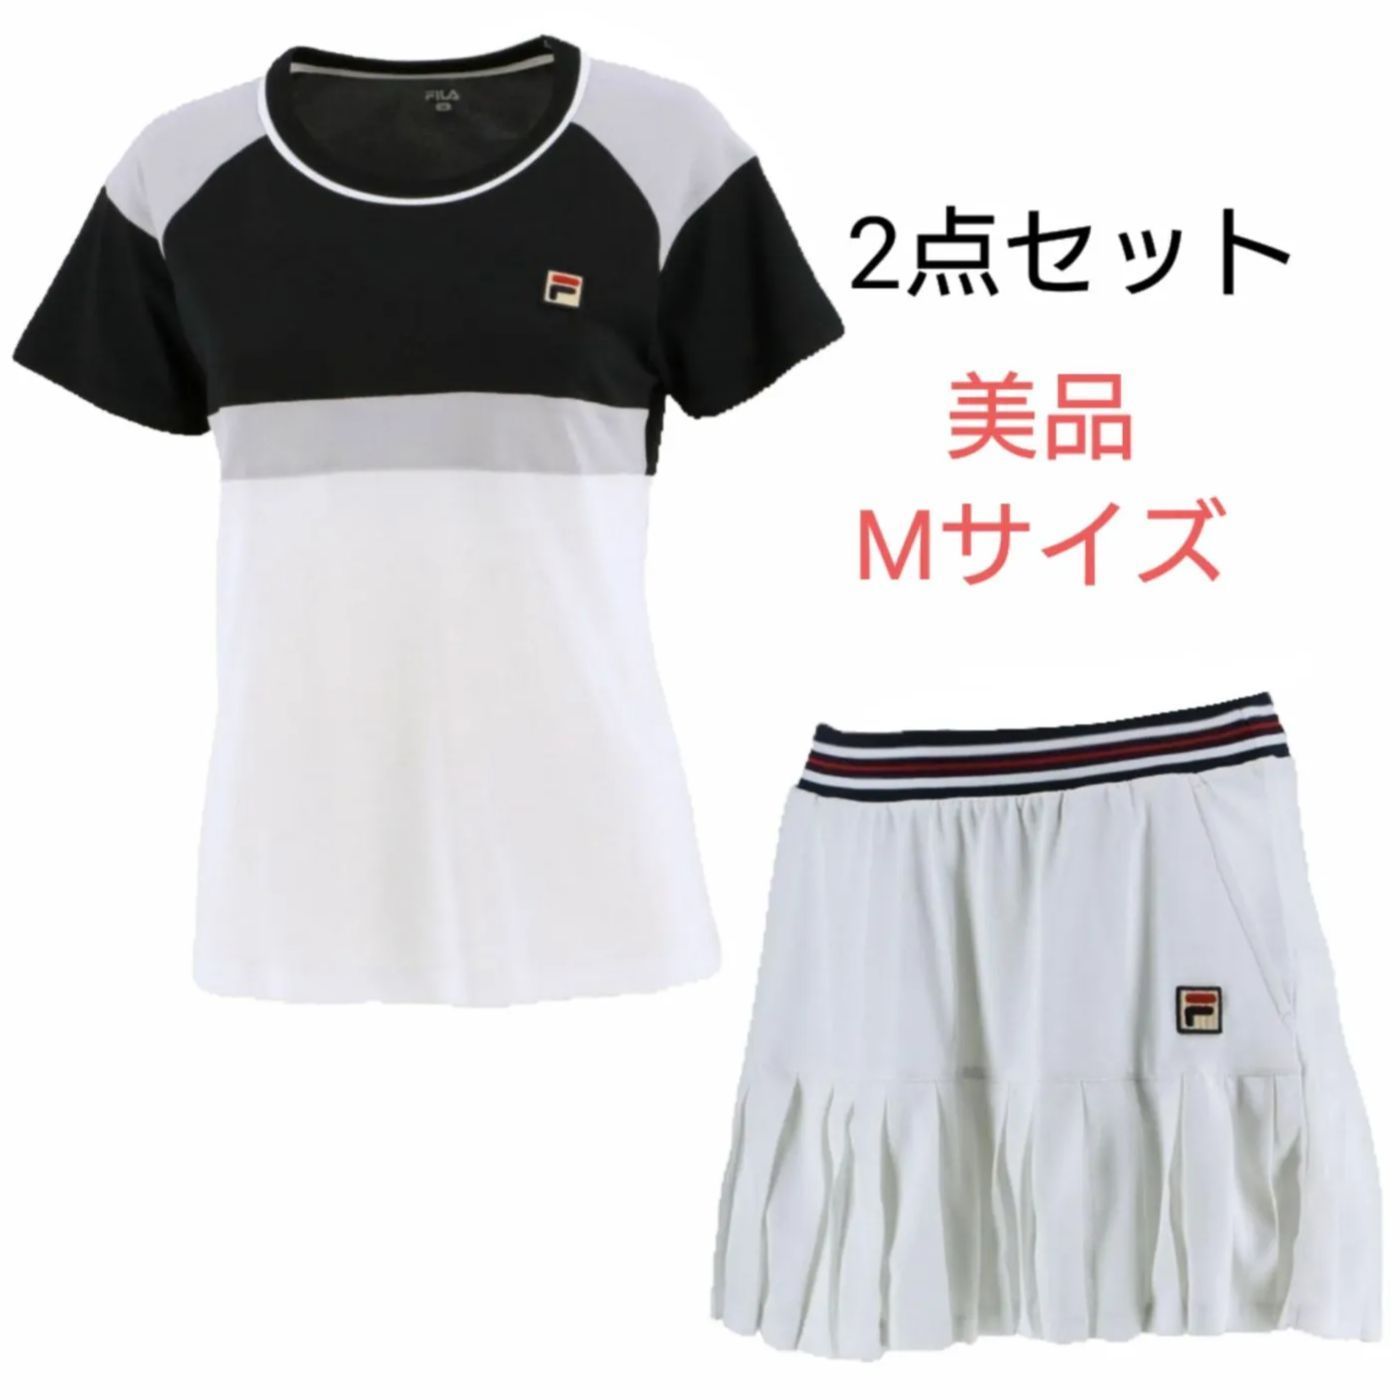 松野屋 キャンバスフラットショルダー フィラテニス ゲームシャツ